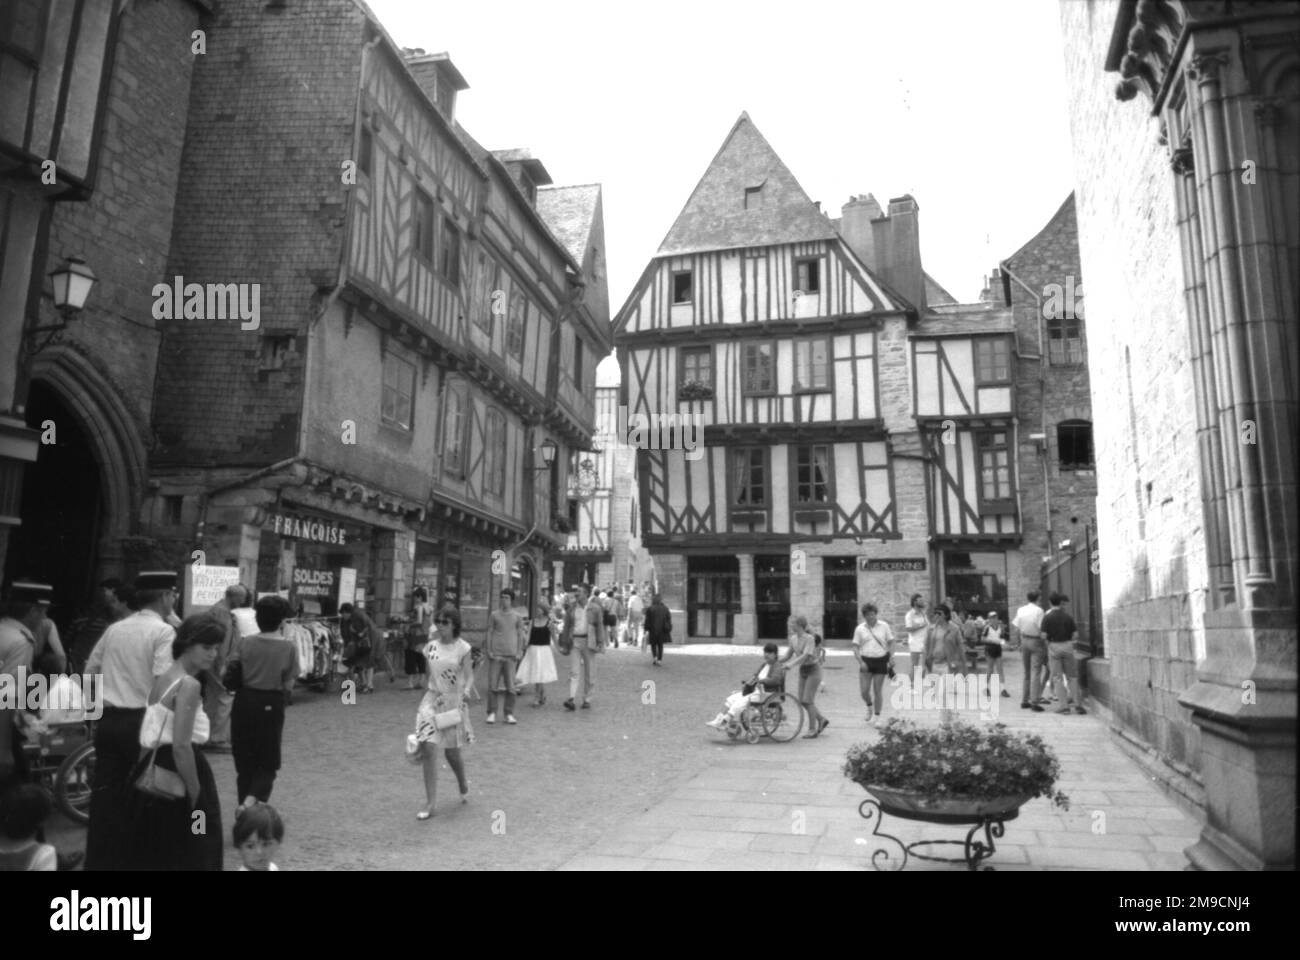 Les rues médiévales de Pleneuf, France Banque D'Images